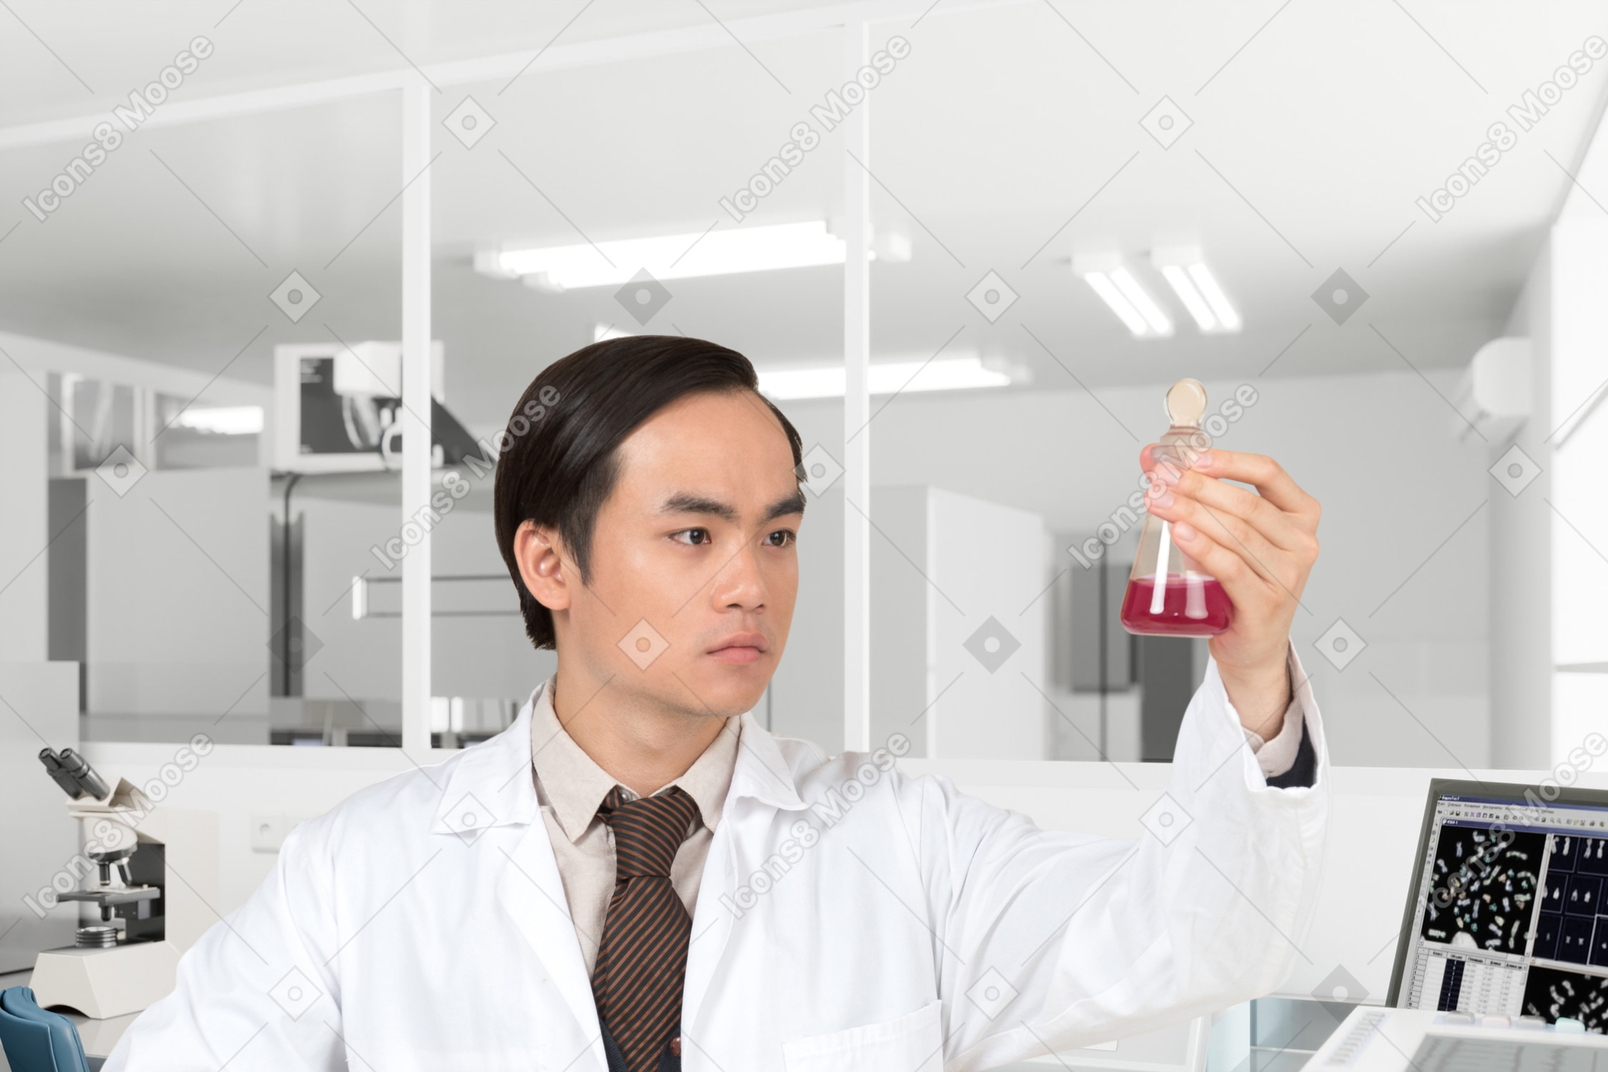 Лаборант смотрит на тестовое стекло